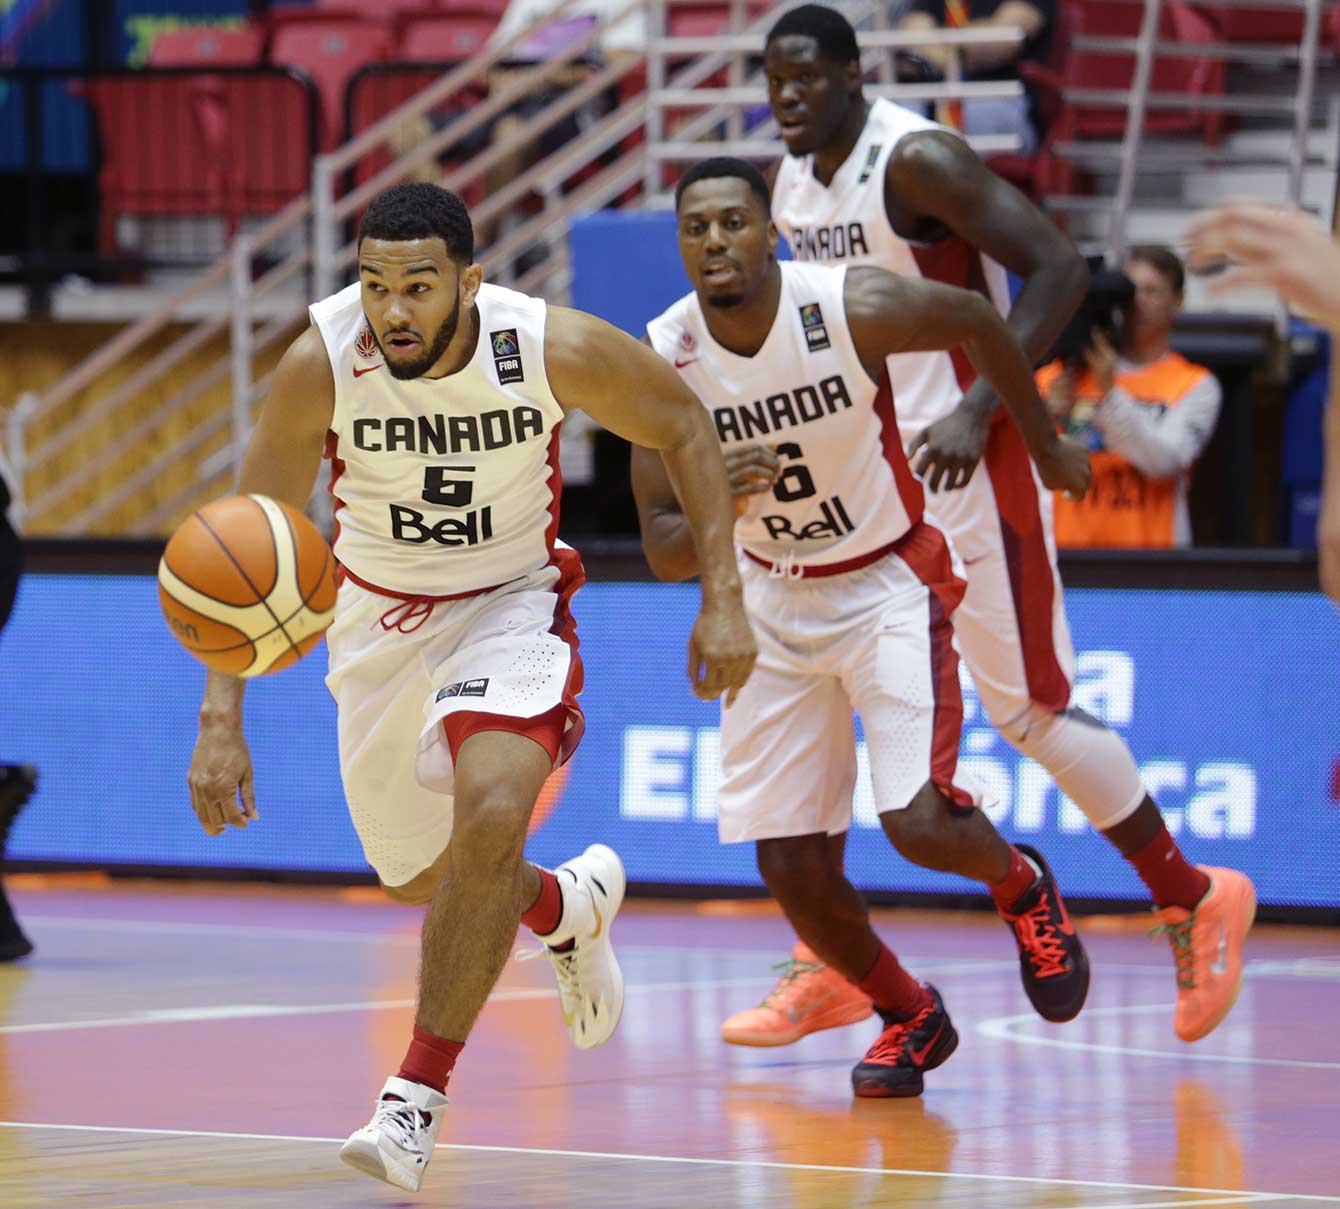 FIBA Americas: Men's basketball team begins quest for Rio 2016  qualification - Team Canada - Official Olympic Team Website